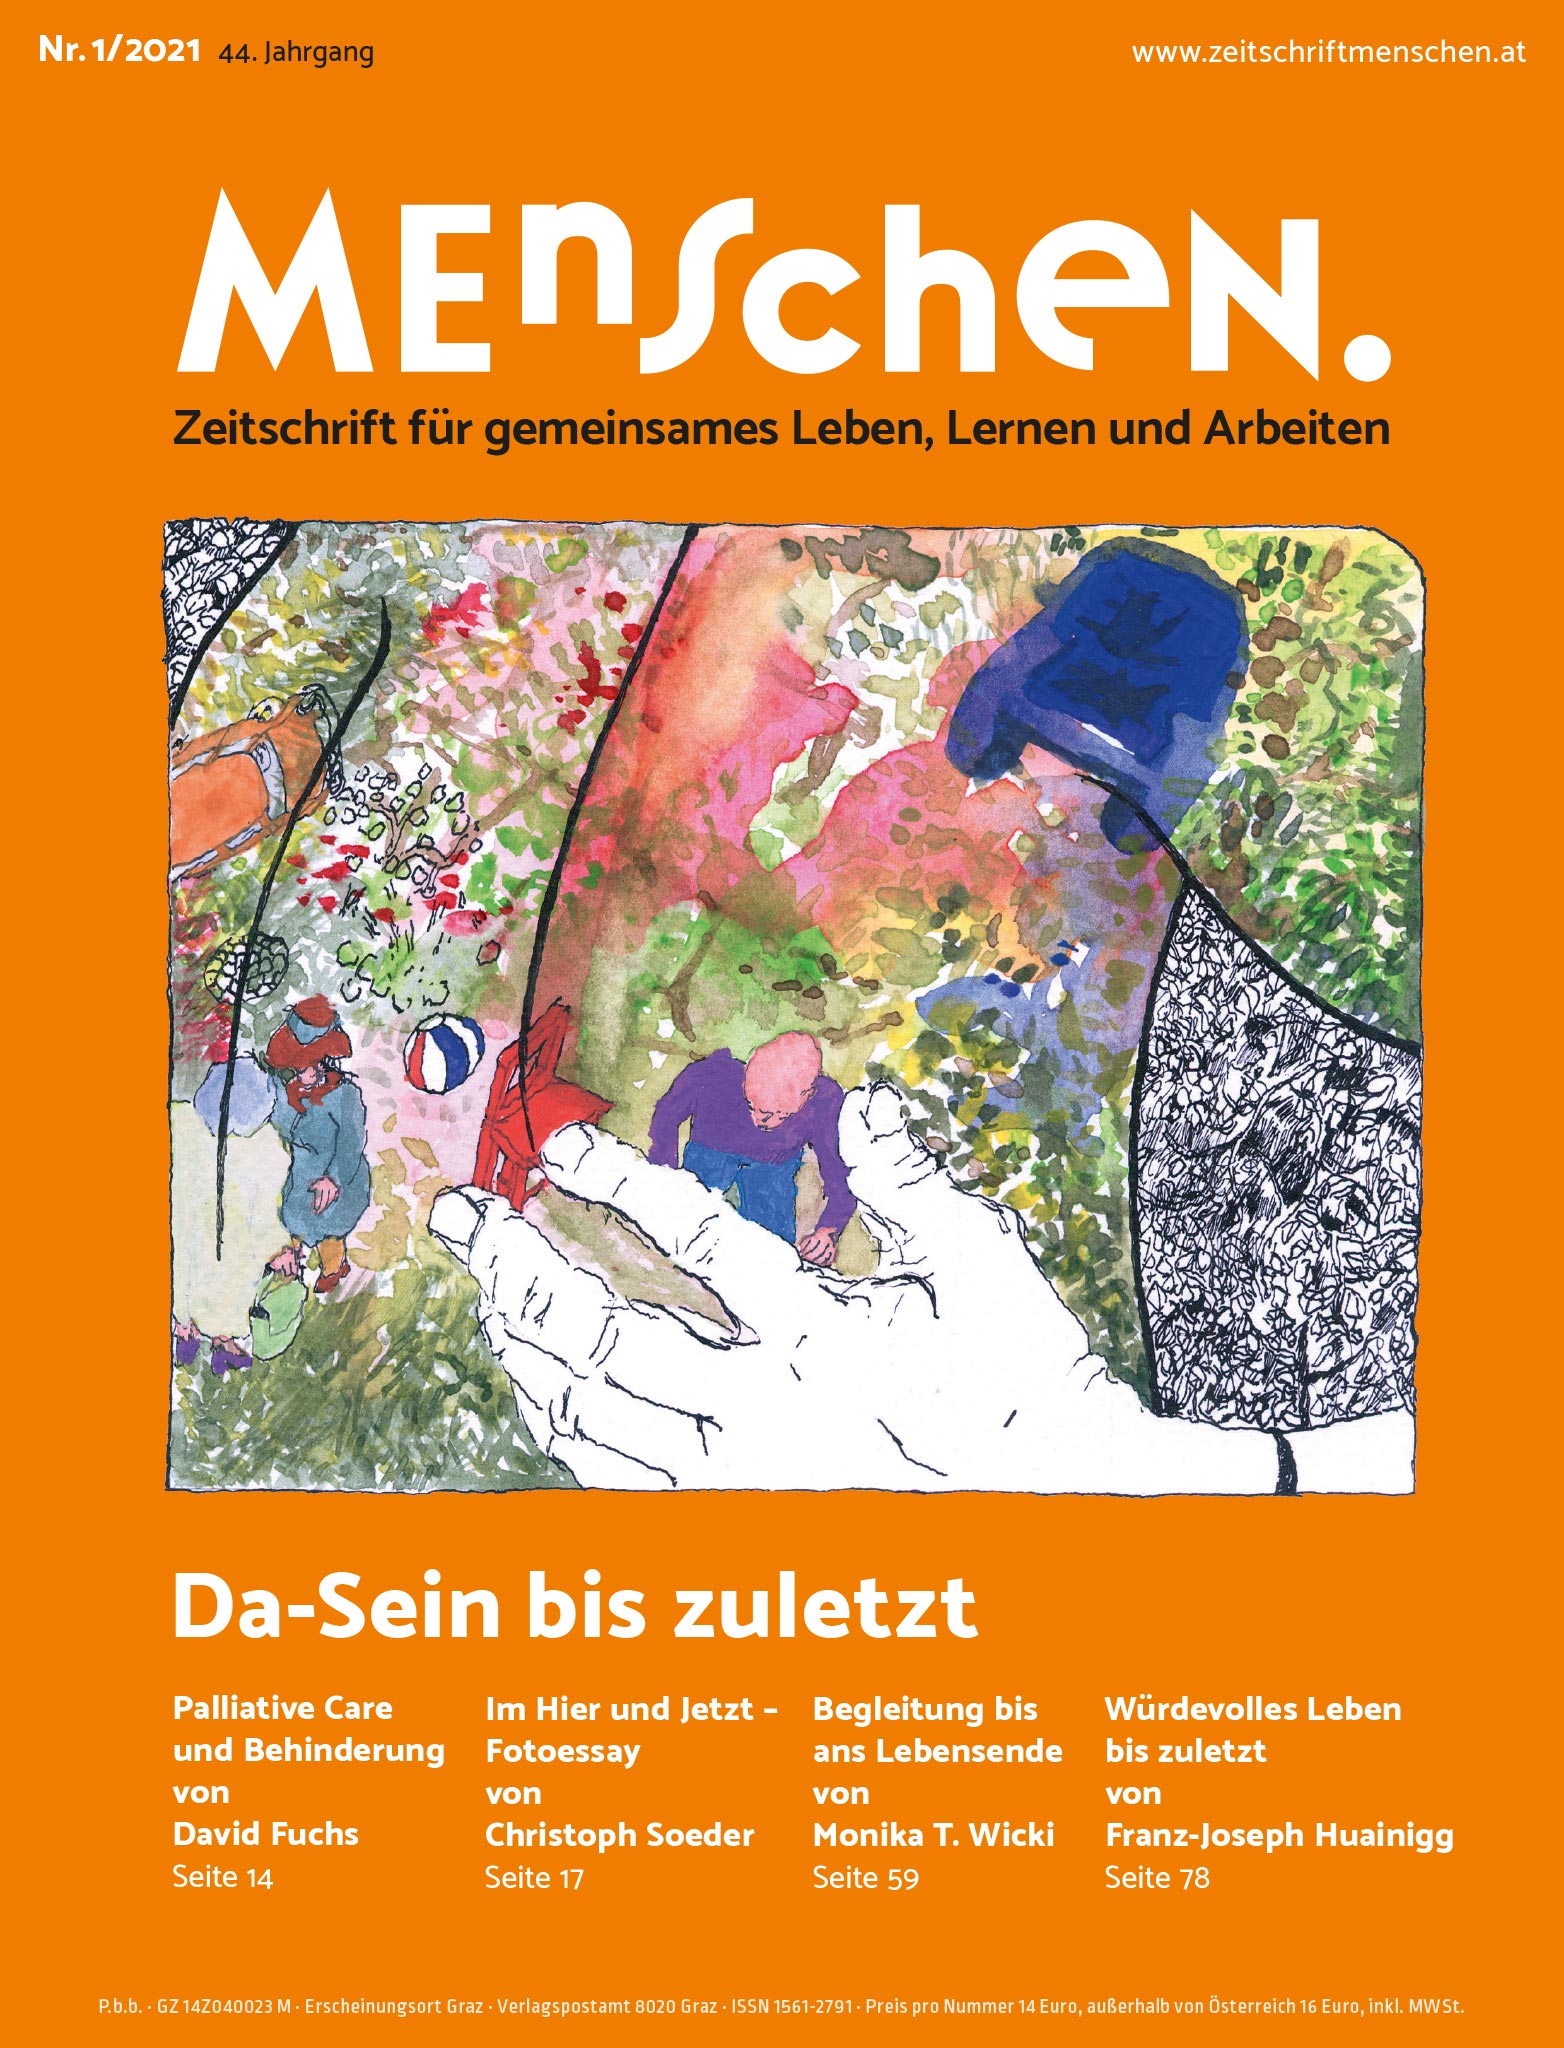 Titelbild Ausgabe 1/2021 "Da-Sein bis zuletzt"